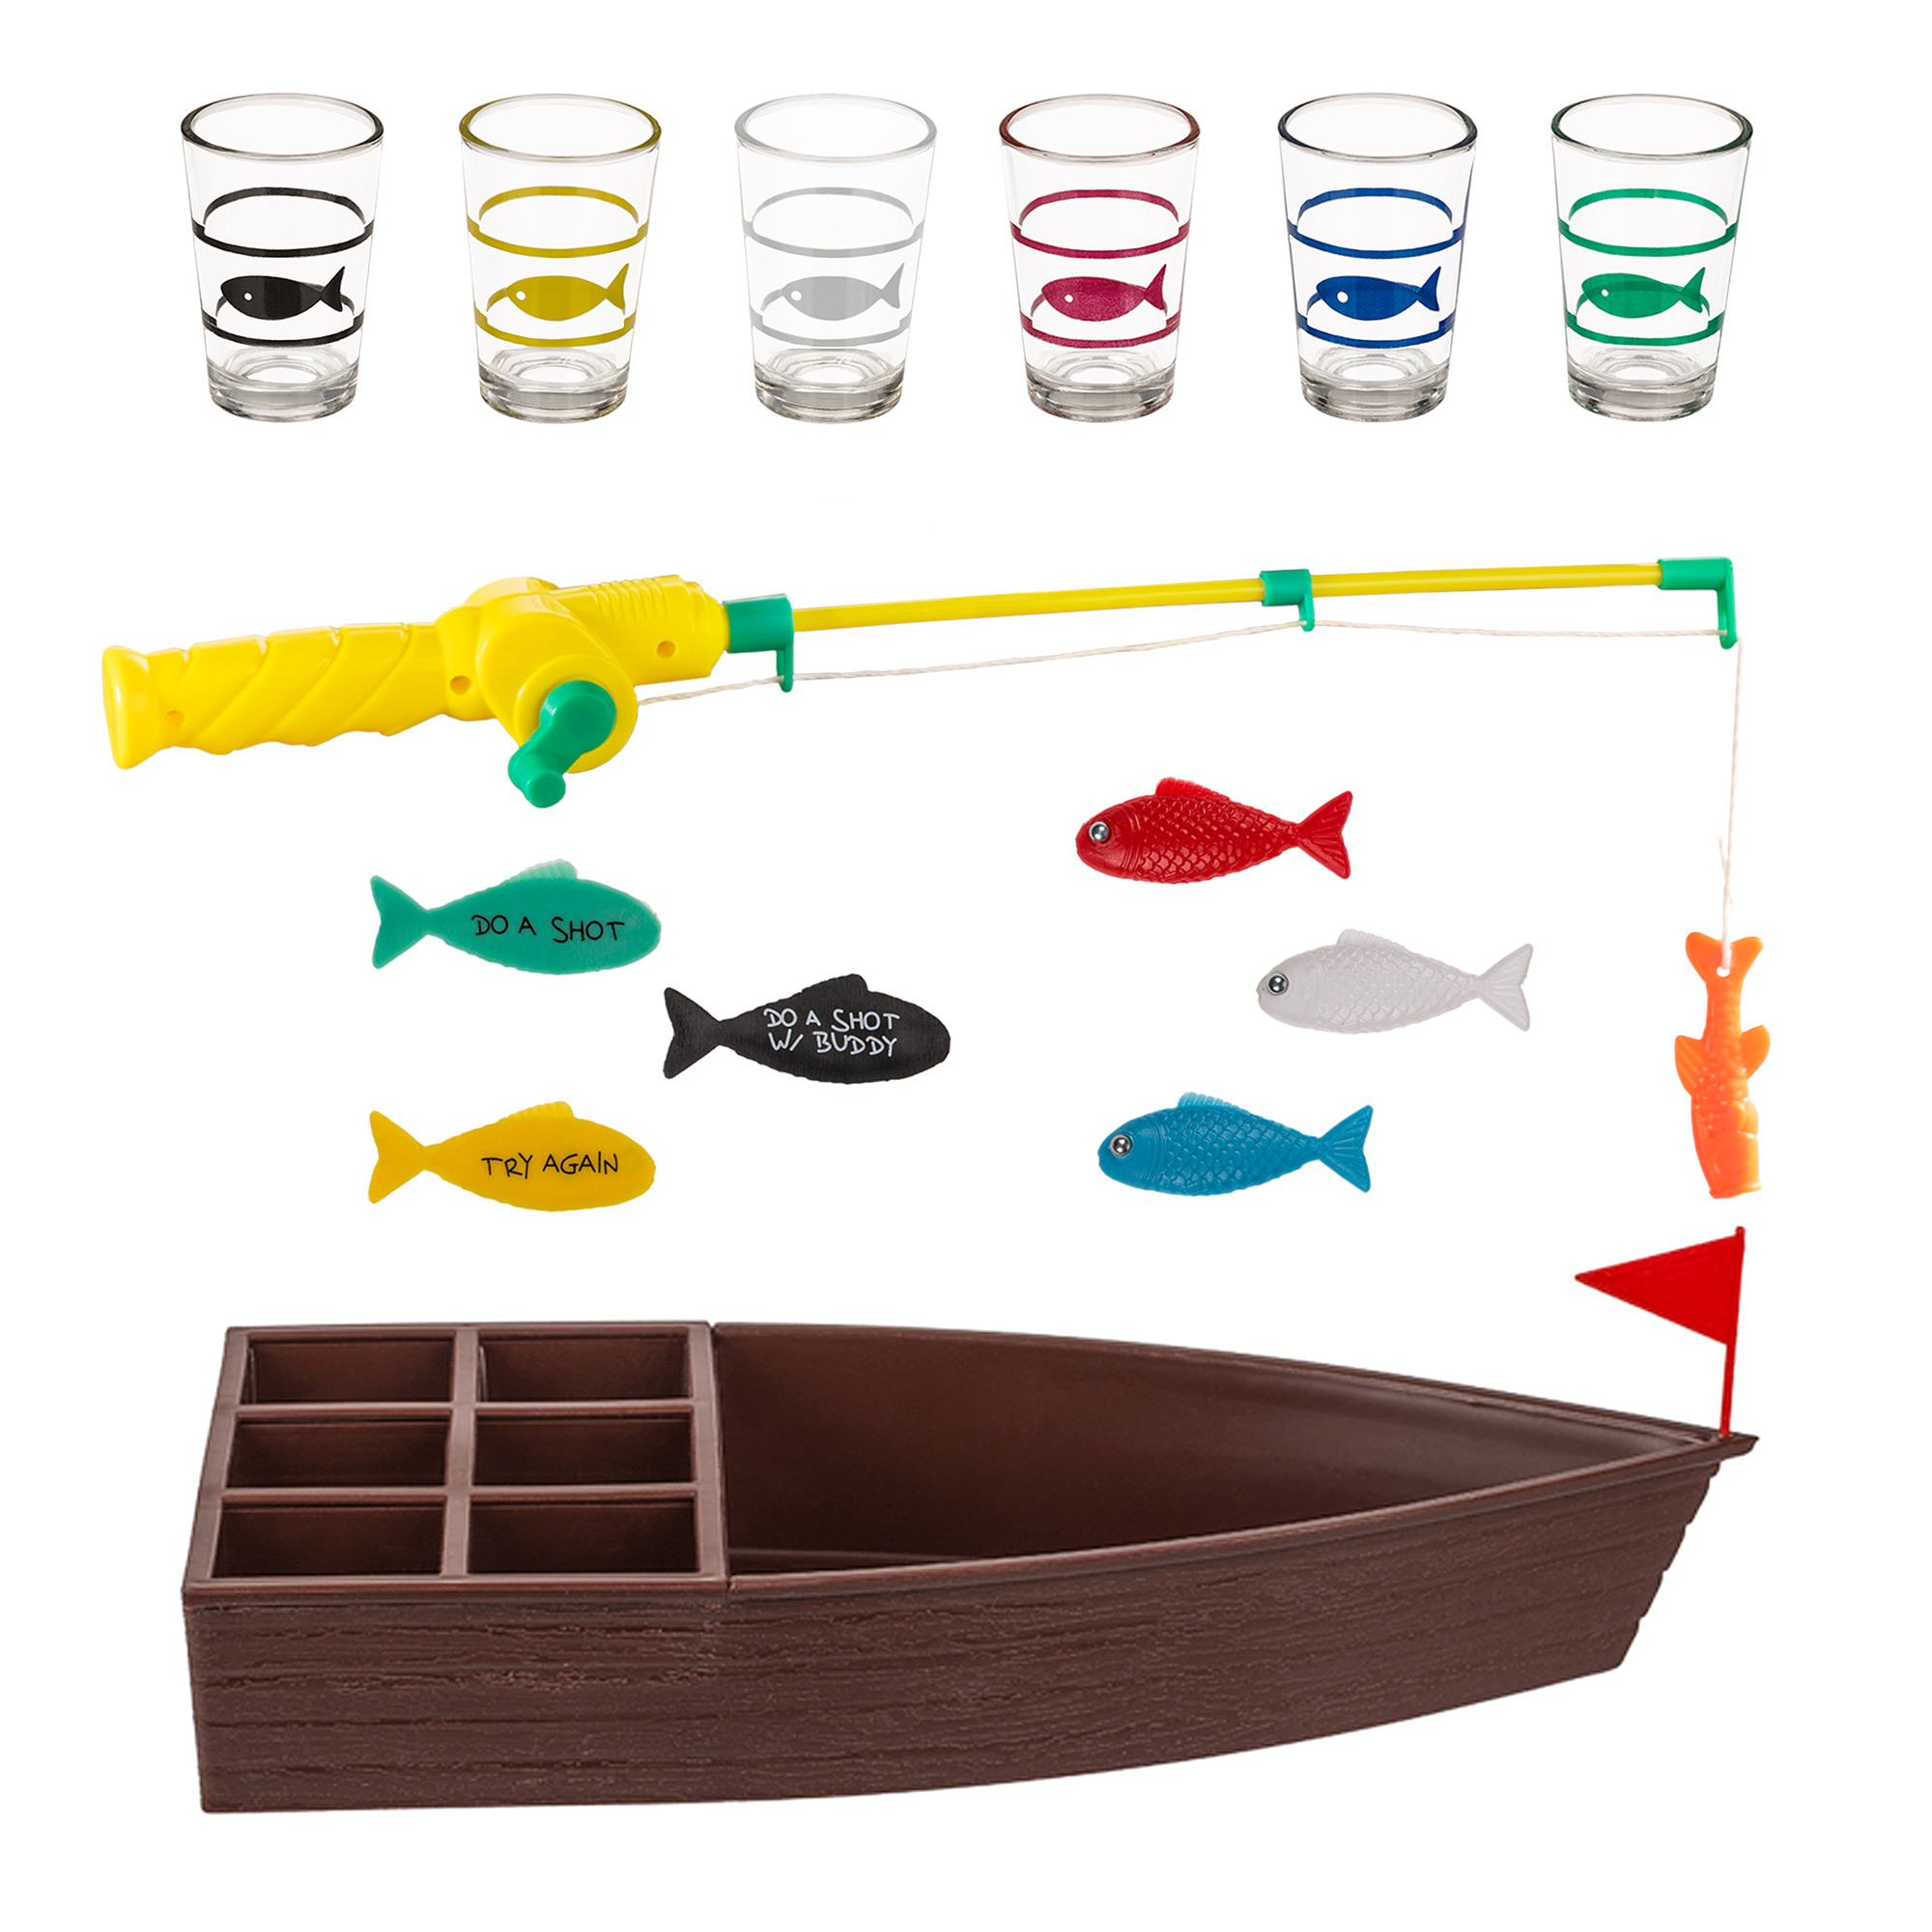 Fische angeln Partyspiel - Shot Trinkspiel 2183-MZ - 4